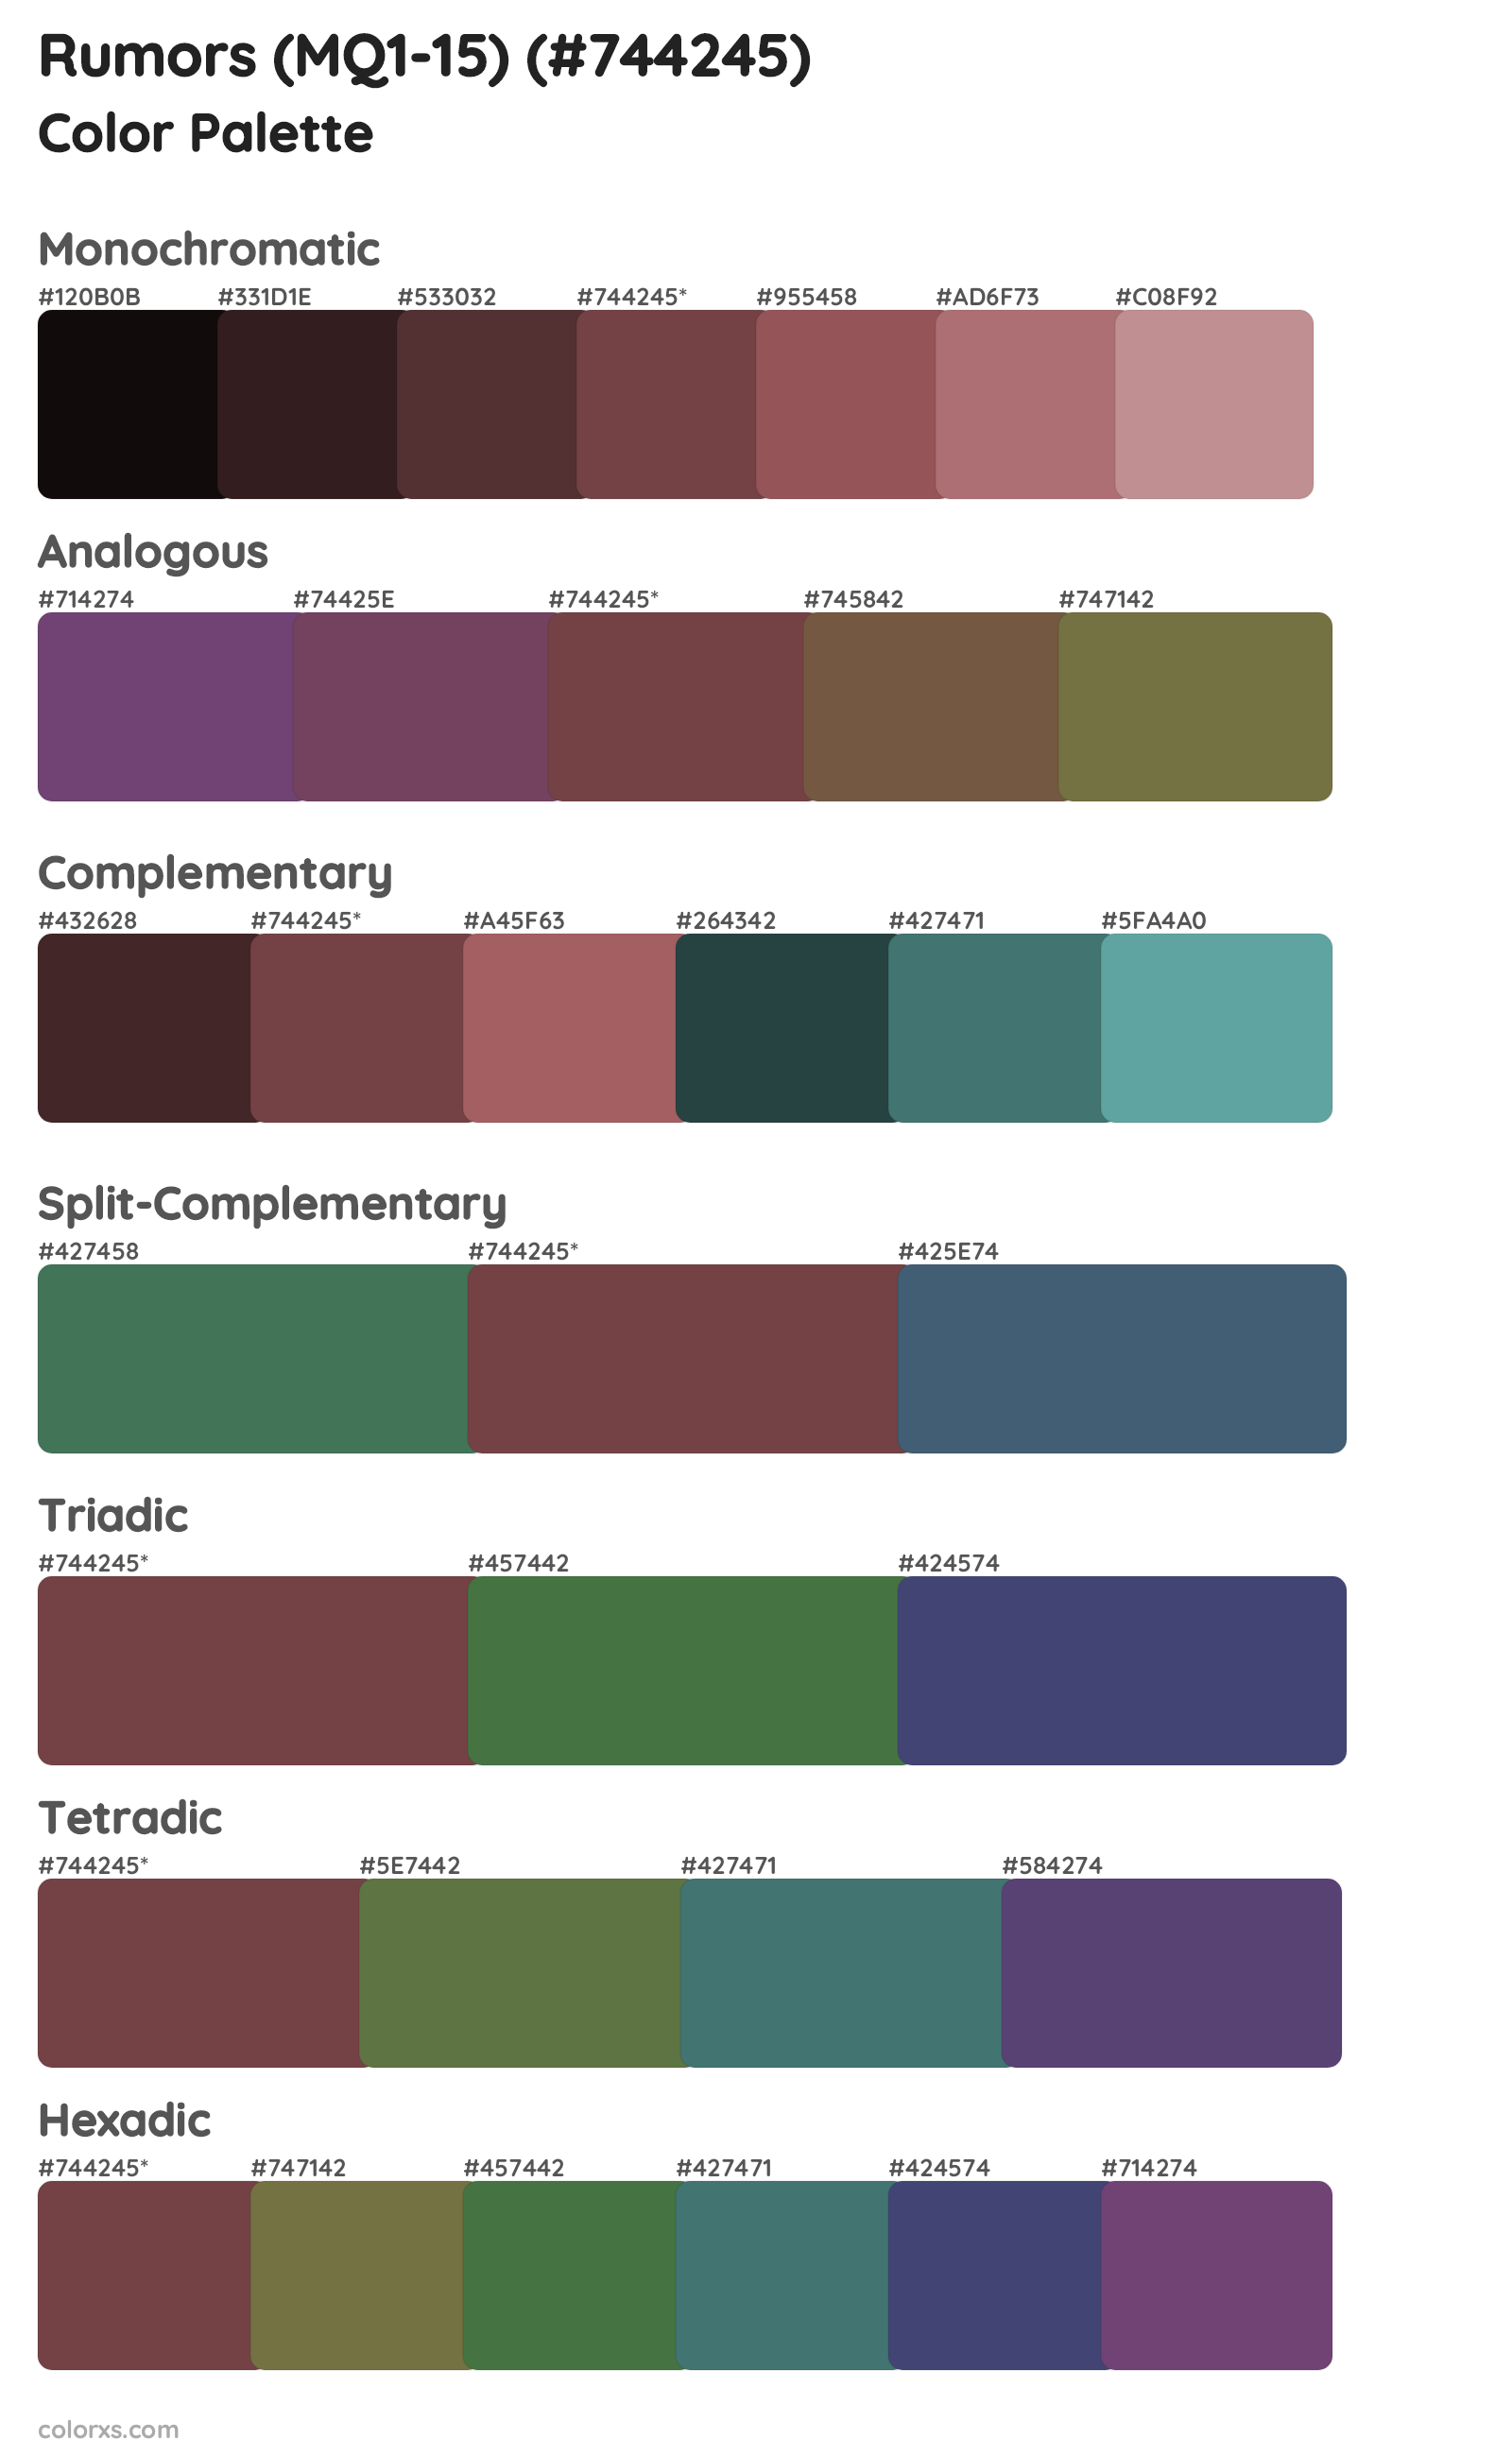 Rumors (MQ1-15) Color Scheme Palettes